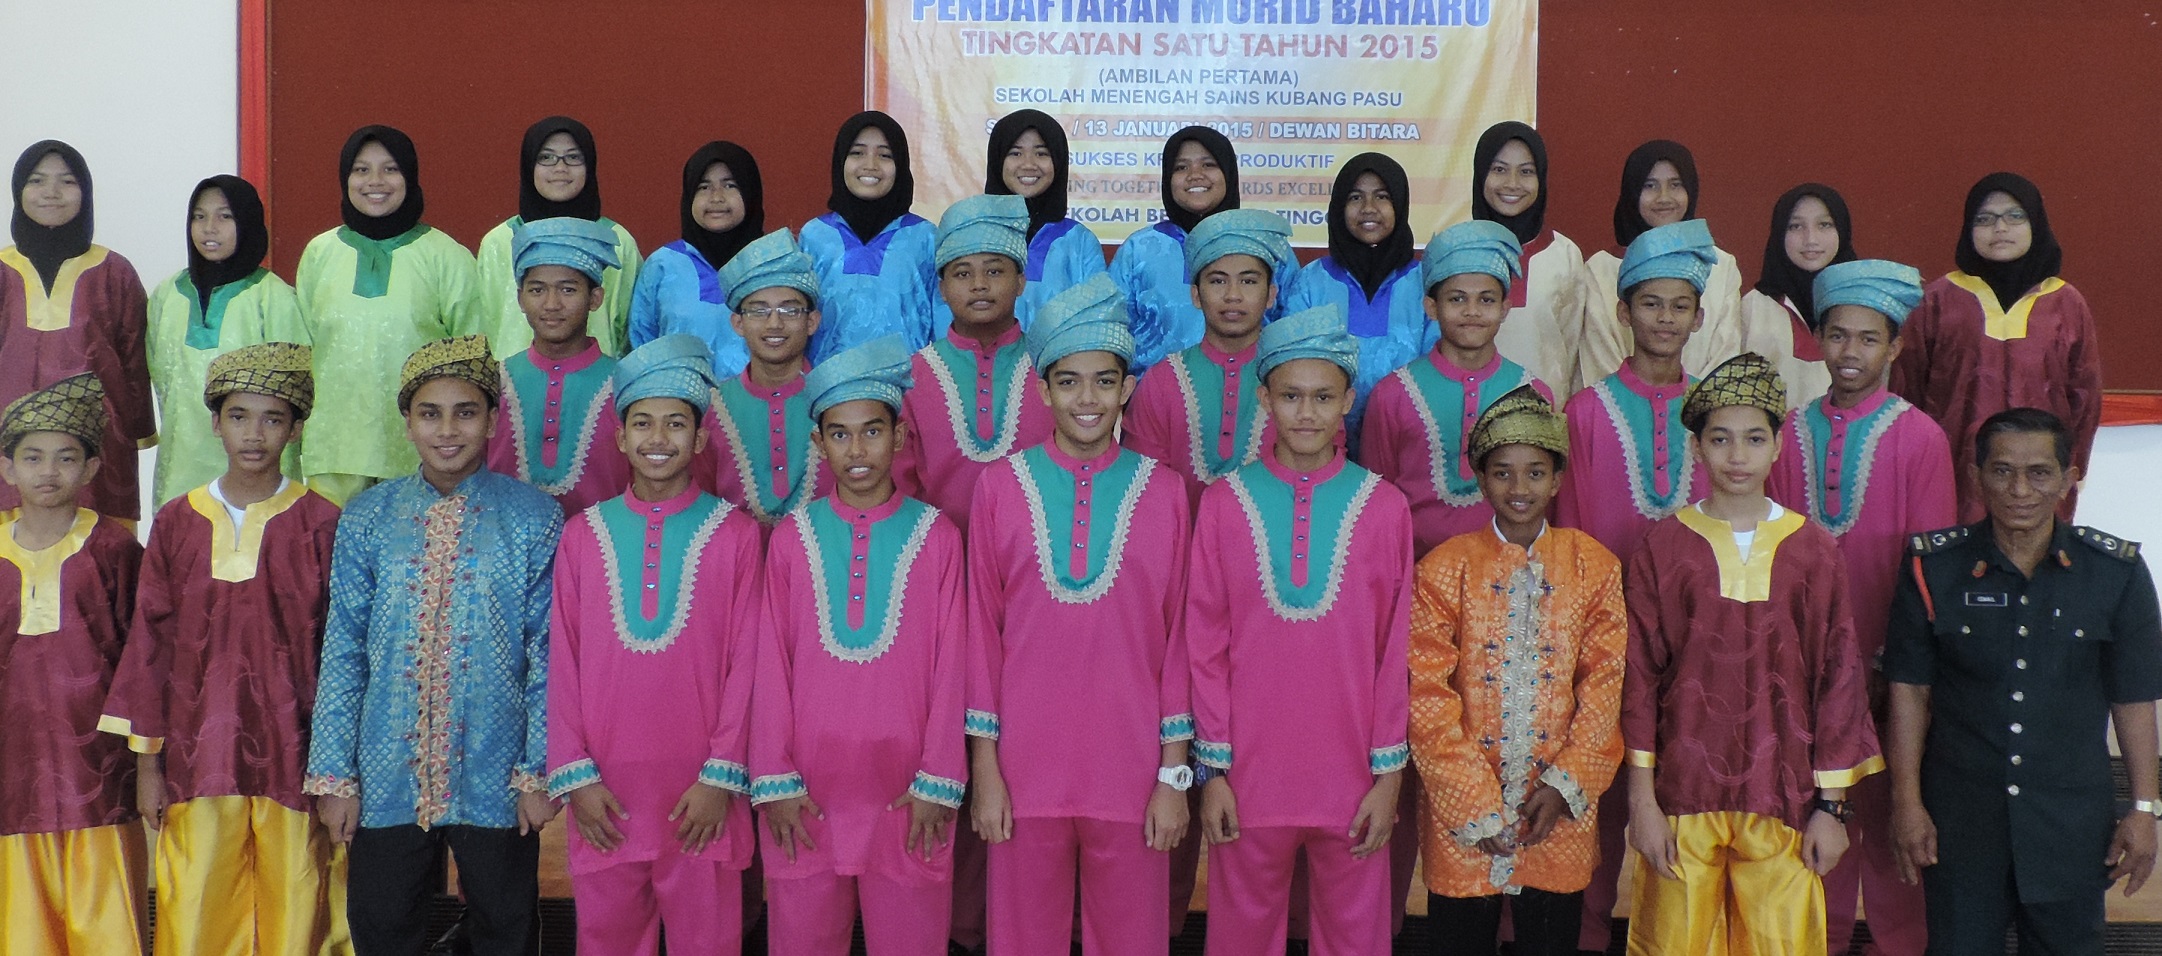 Group photo of The Sekolah Menengah Sains Kubang Pasu Dikir Barat Troupe